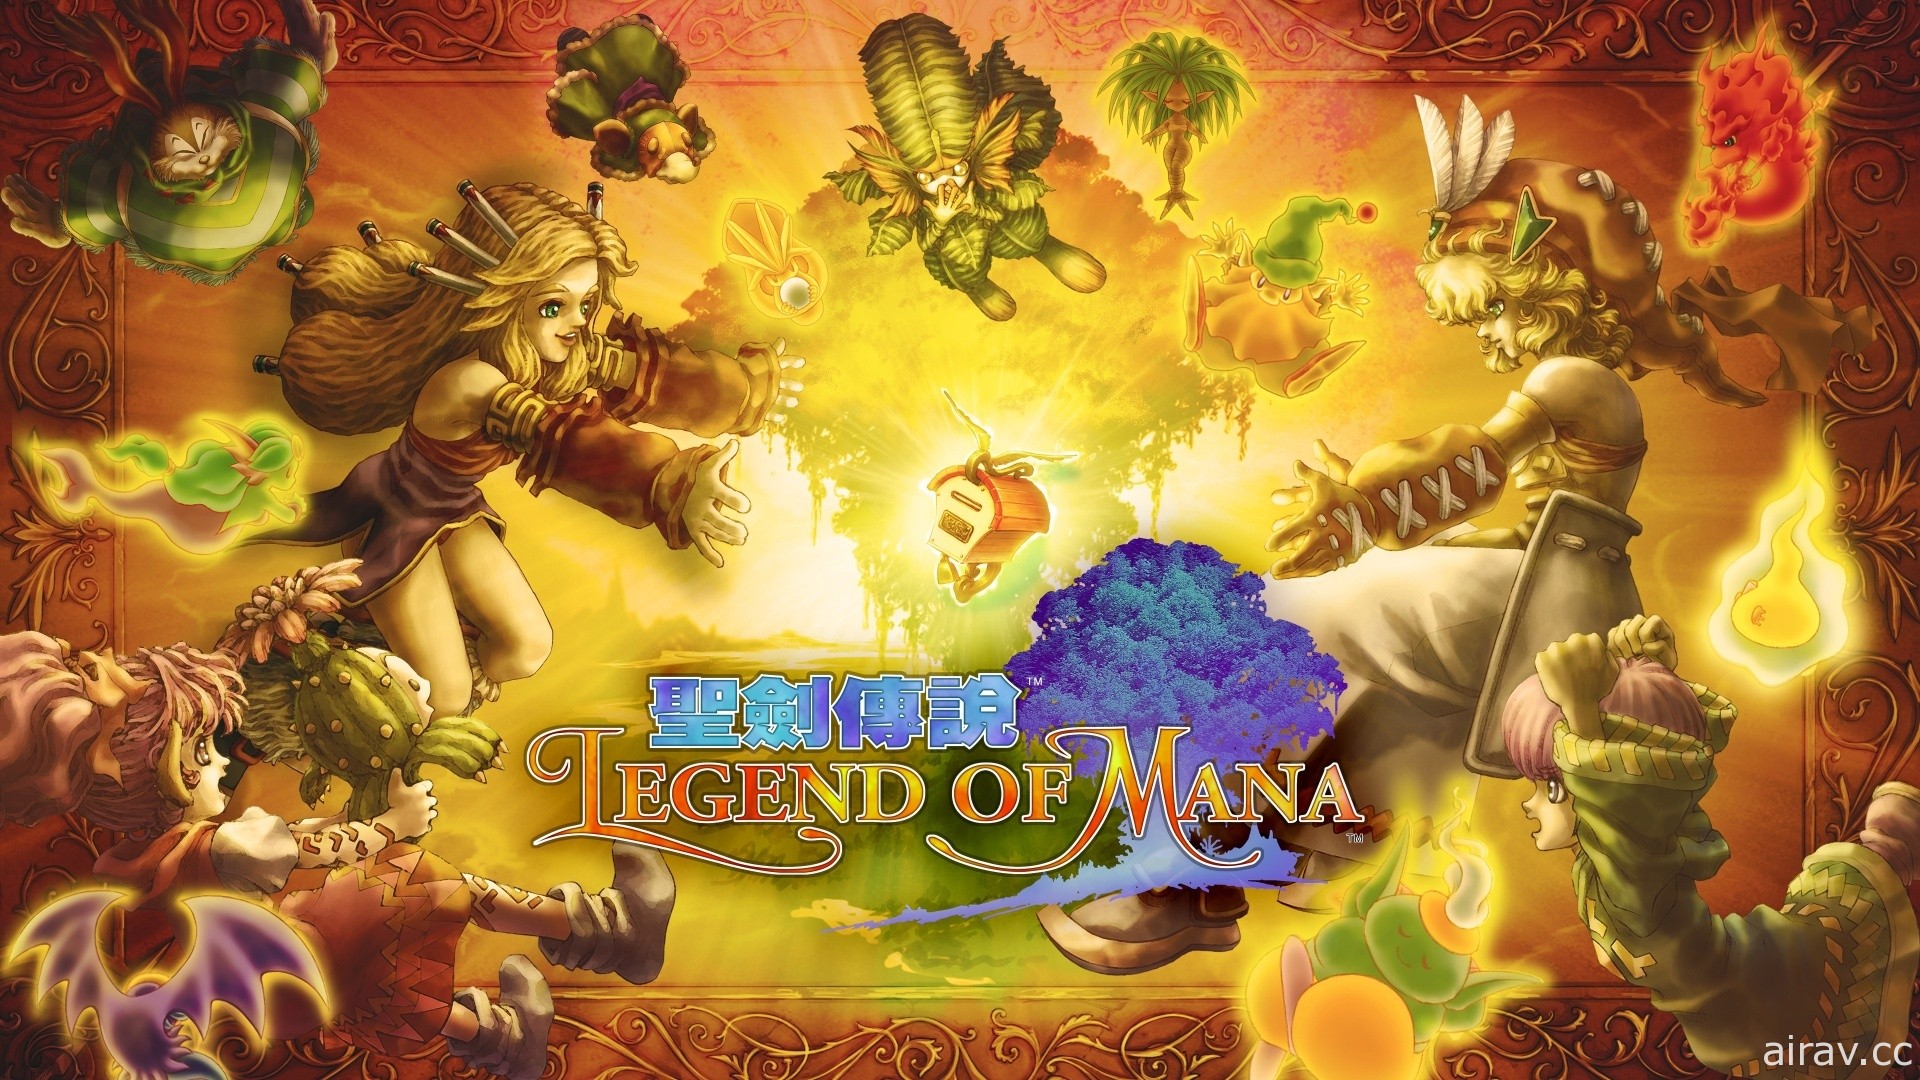 《圣剑传说 Legend of Mana》Nintendo Switch 版现已开放预约